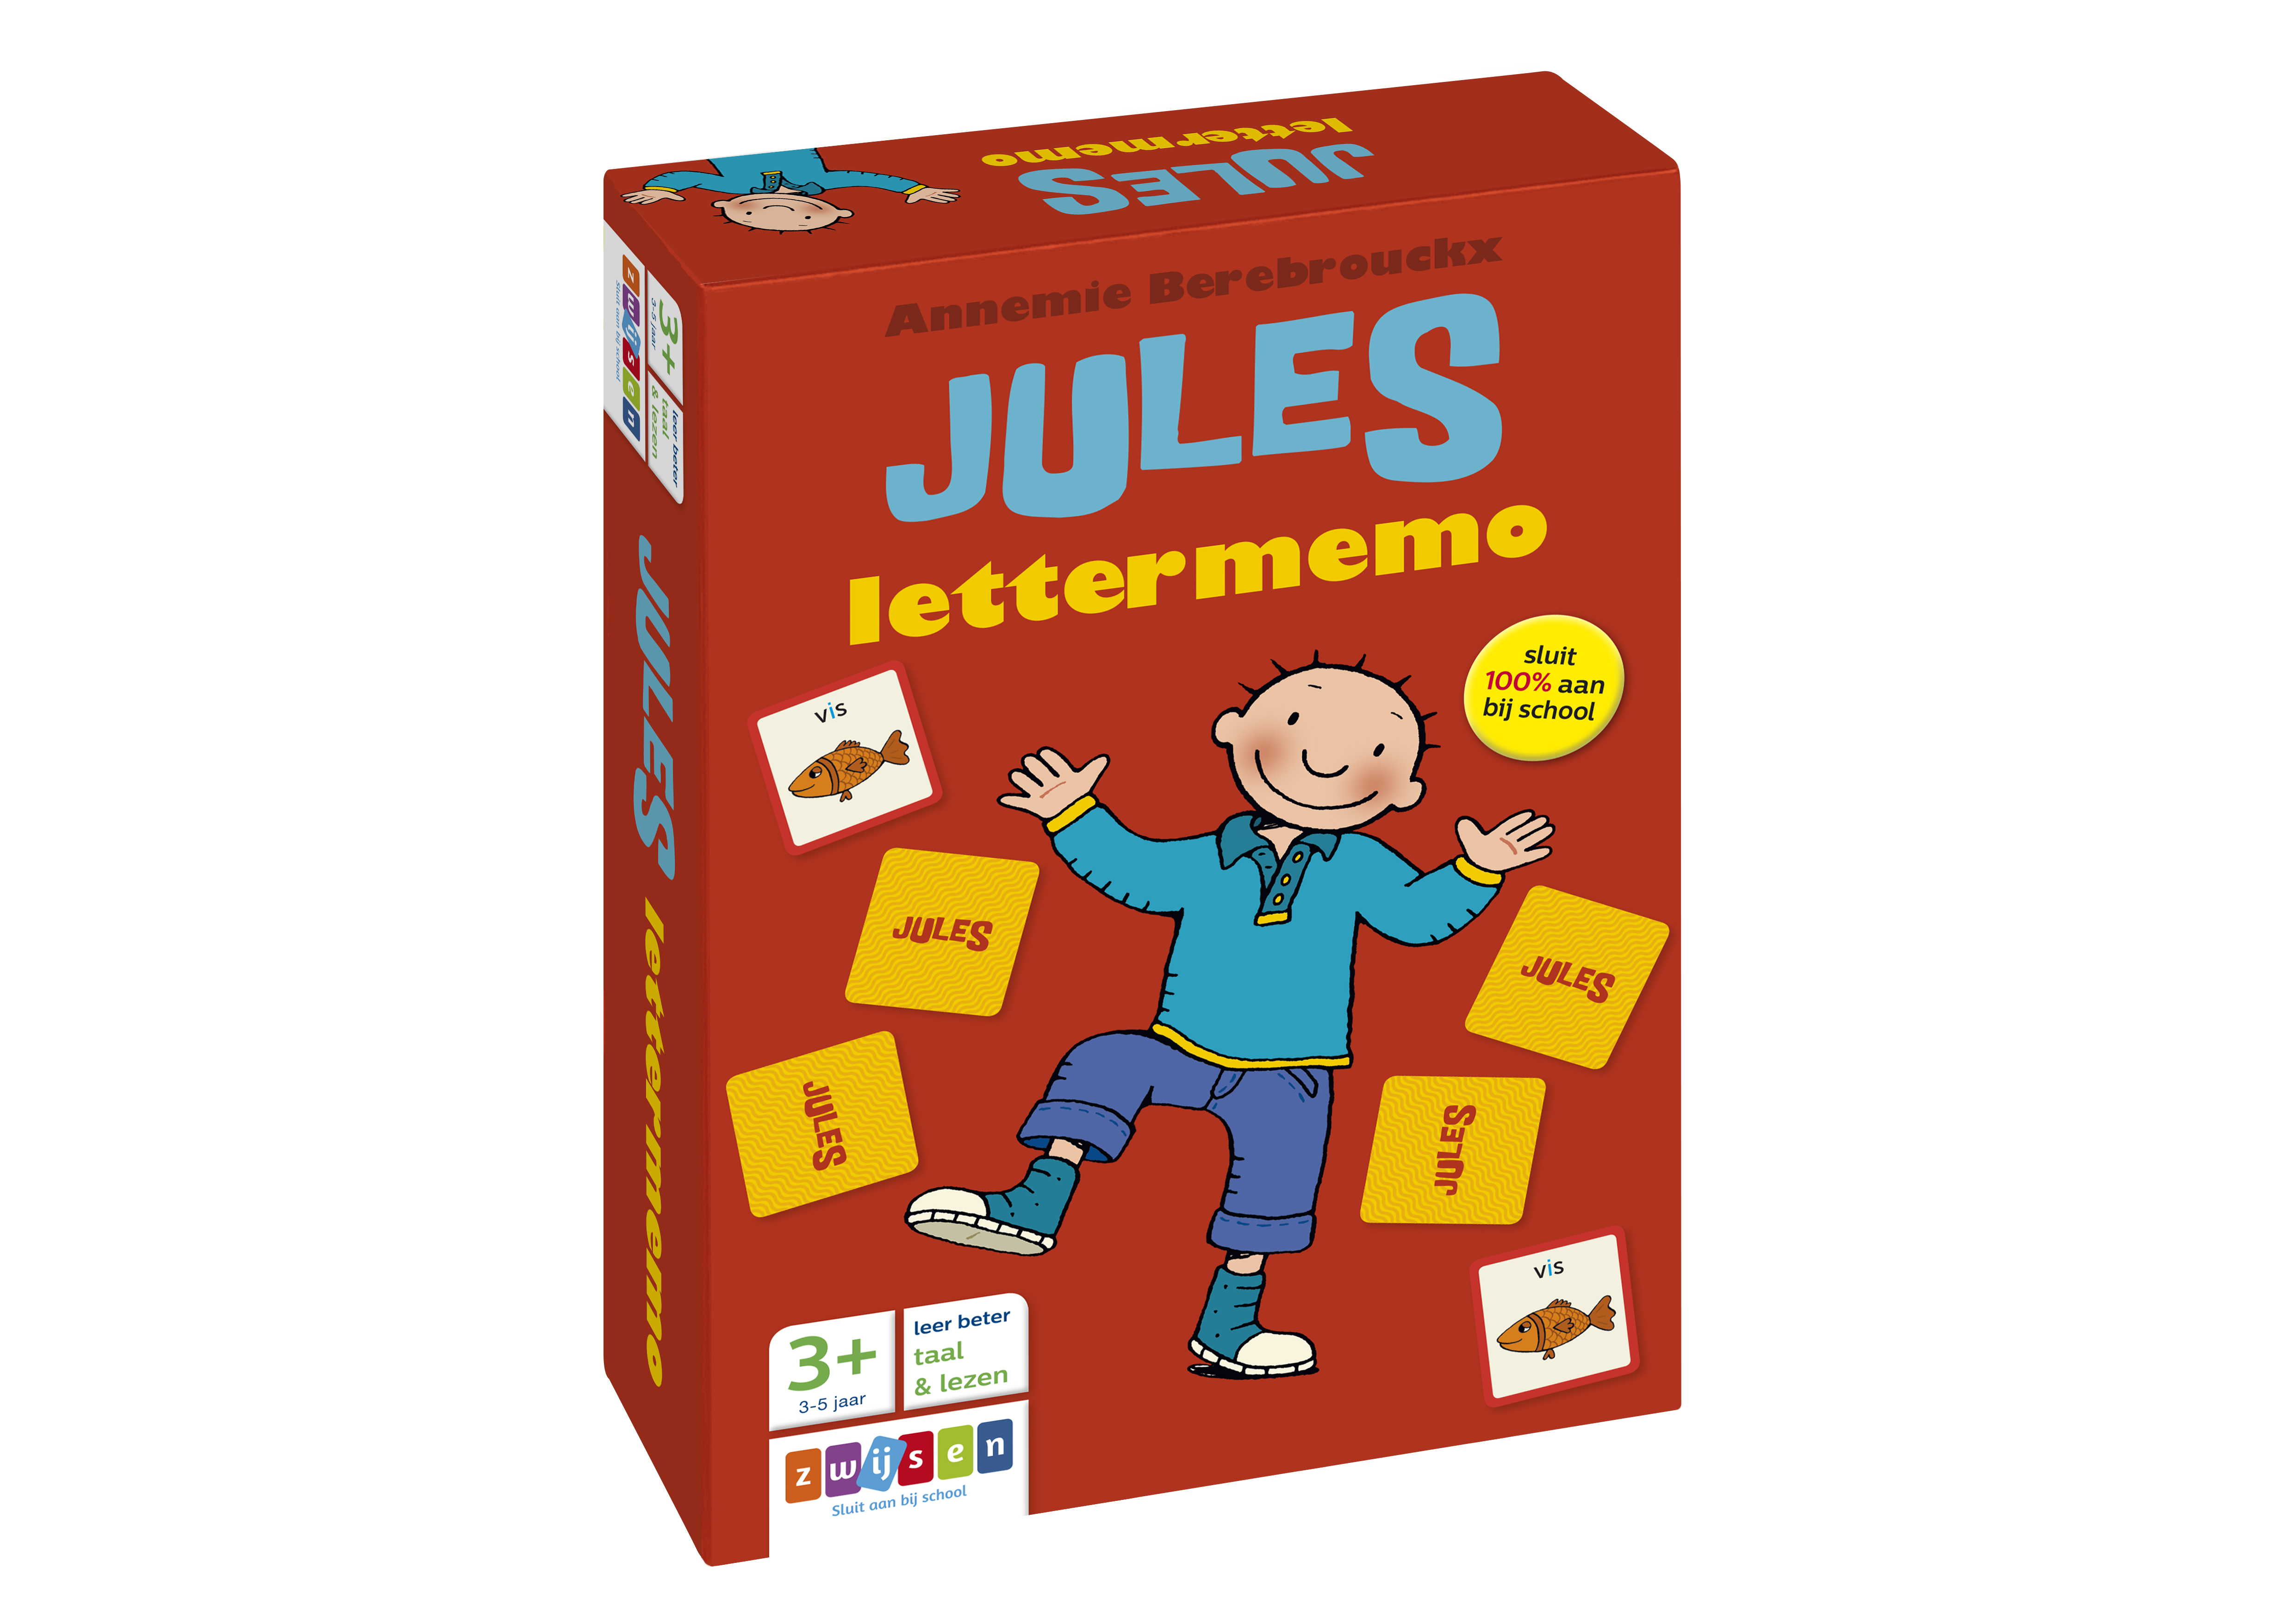 Jules lettermemoNon-books High VAT